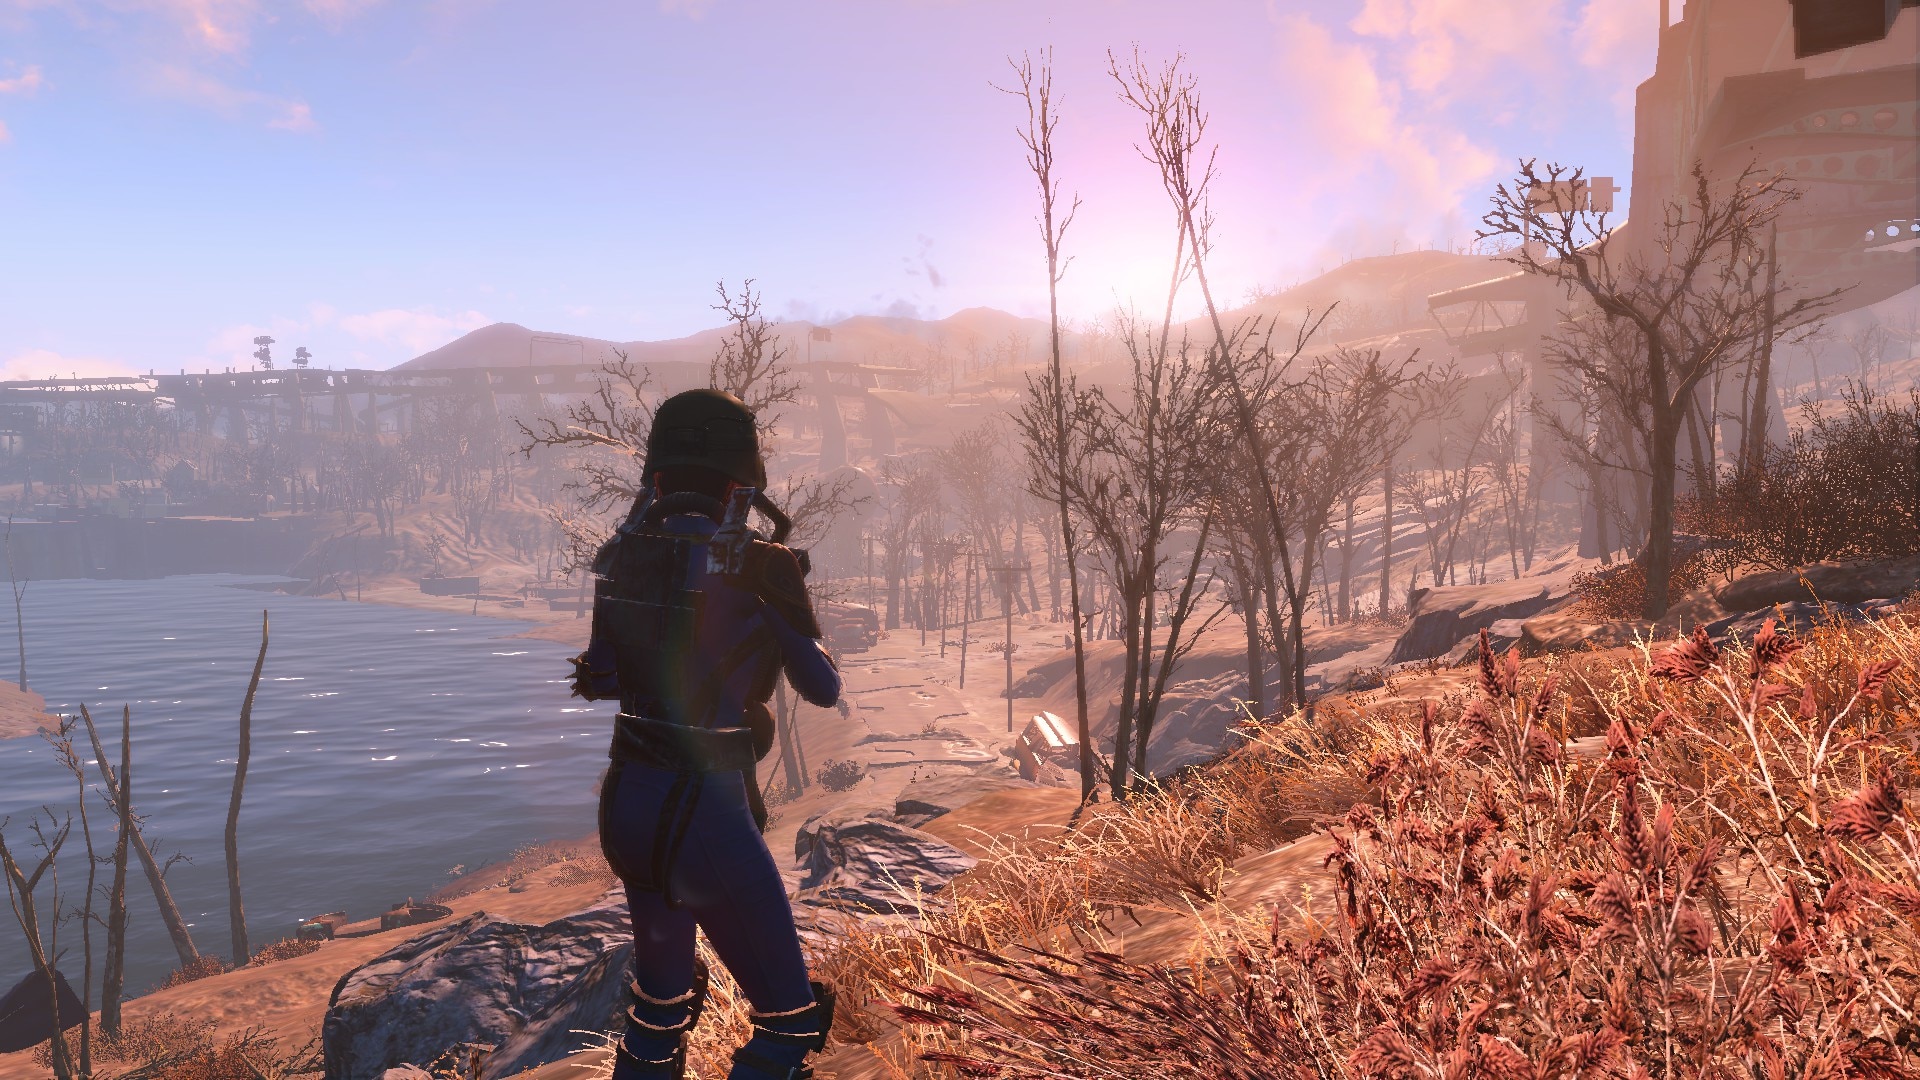 Изображение для Fallout 4: Game of the Year Edition [v 1.10.163.0.1 + DLCs] (2015) PC | RePack от xatab (кликните для просмотра полного изображения)